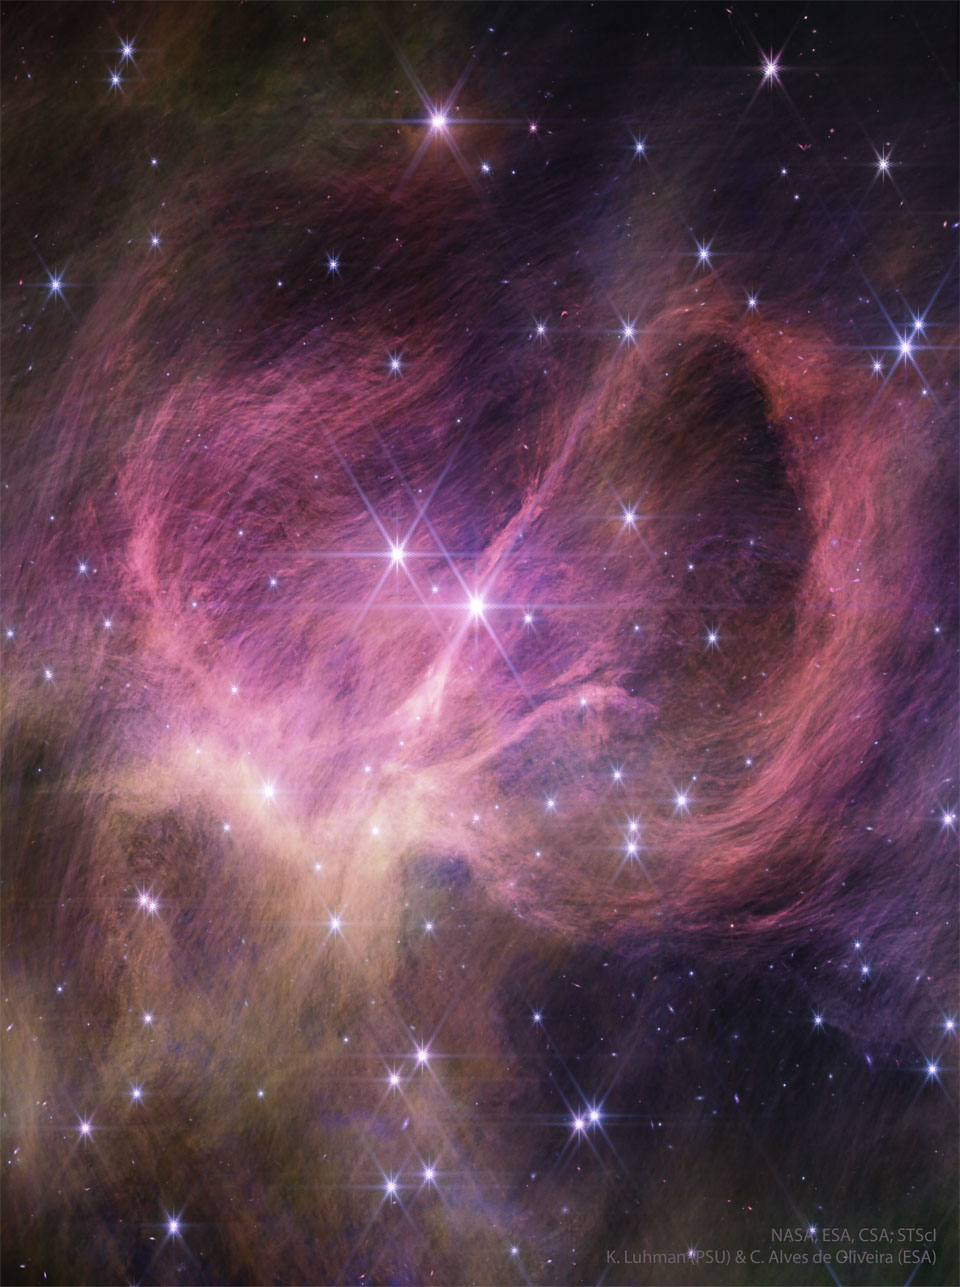 图中显示了一个星团以及周围的星云气体和尘埃。在红外光下显示为粉红色，尘埃缠绕在星云中心，本身看起来由许多更细的细丝组成。有关更多详细信息，请参阅说明。